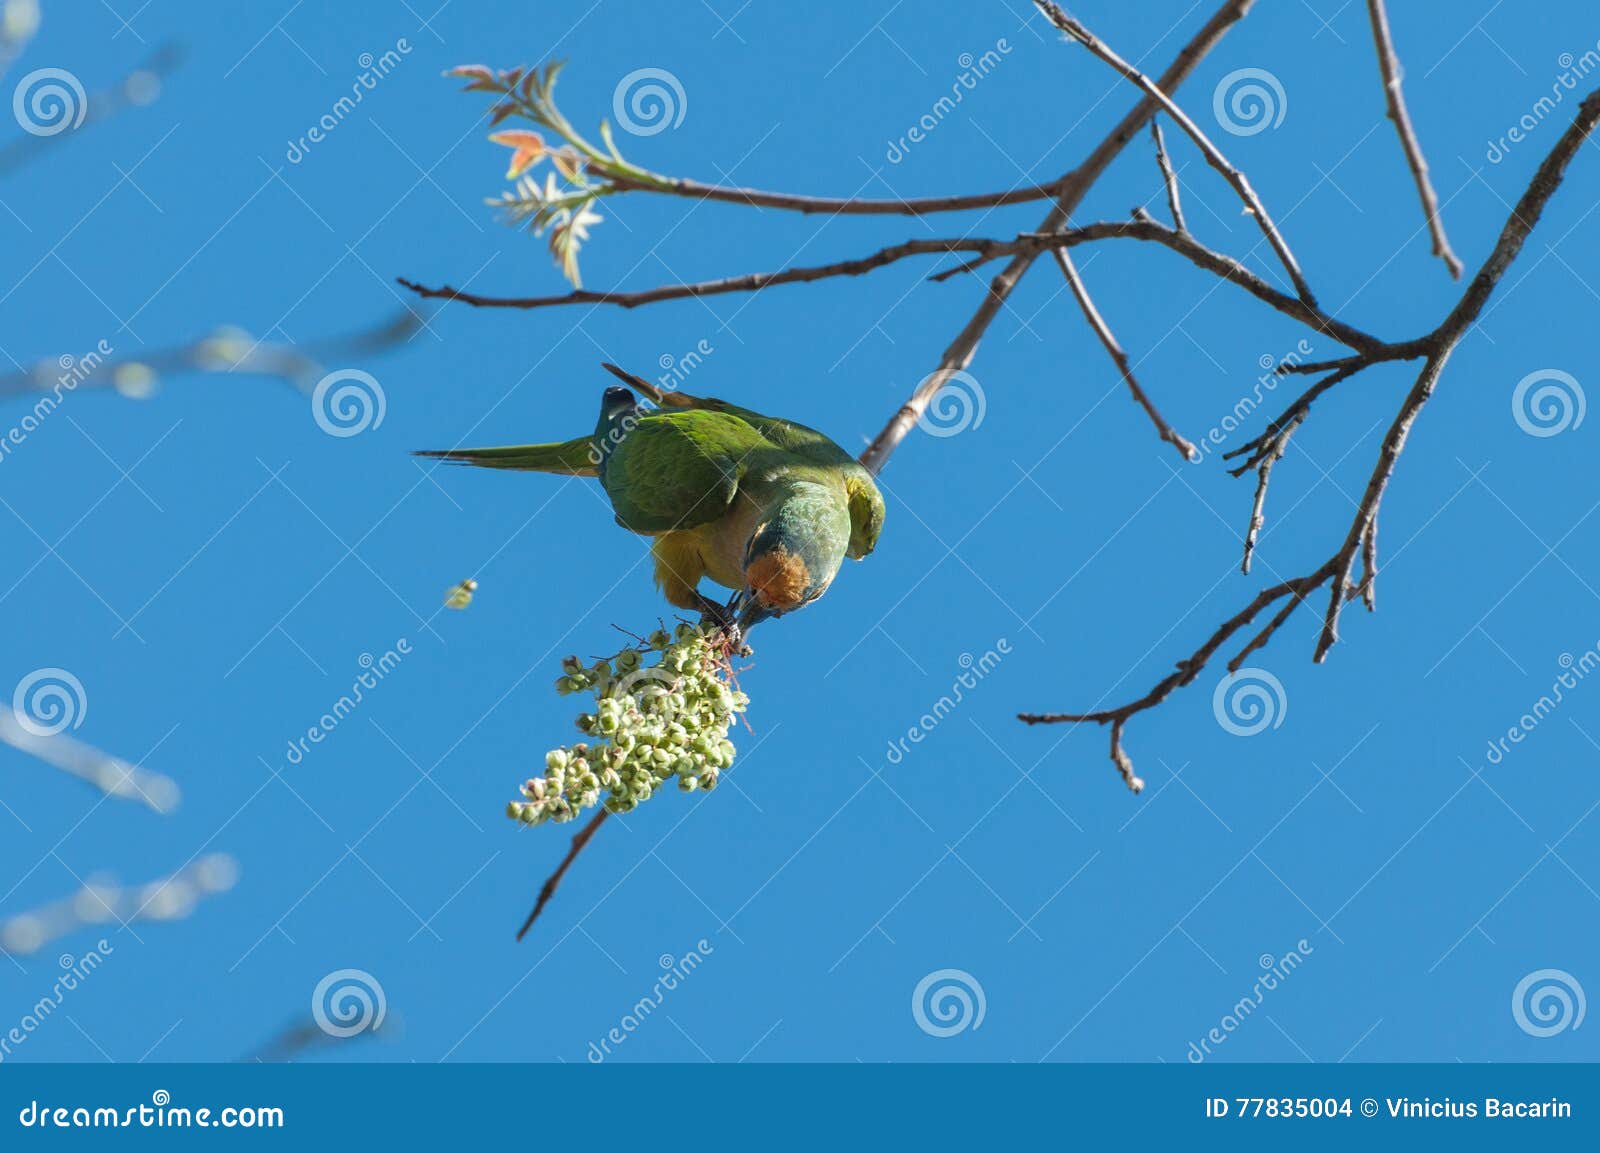 Oiseau d'Aratinga s'accrochant à une branche pour manger quelques fleurs Plumes jaunes et vertes, bel oiseau